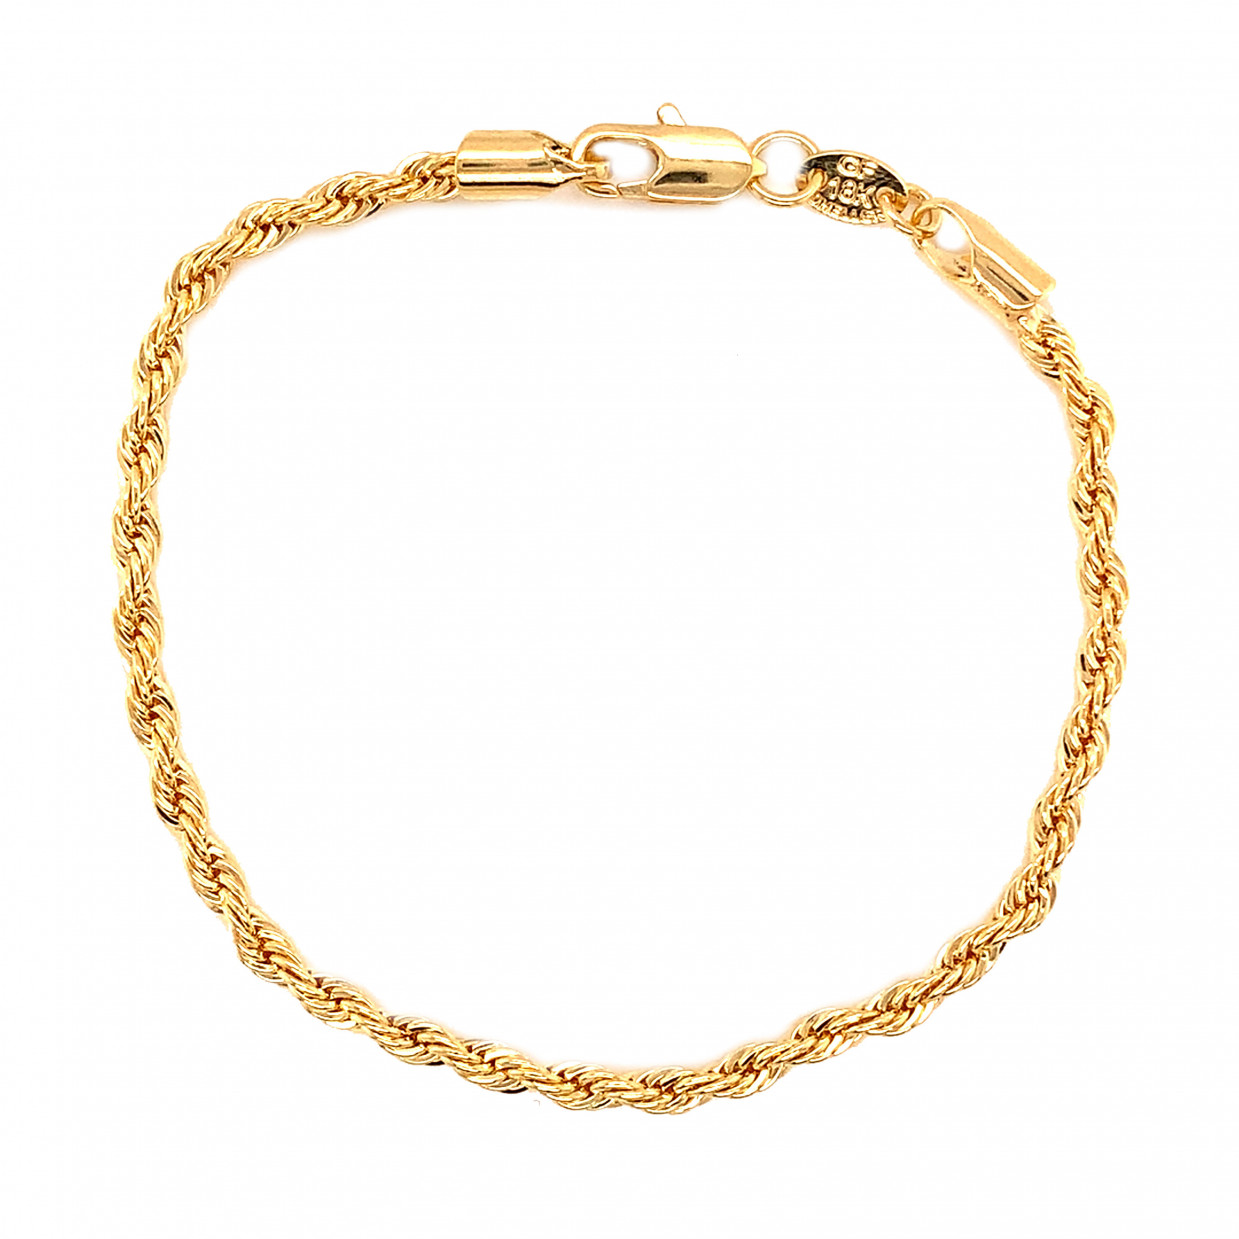 3mm Rope Bracelet - Gold Filled - 7"